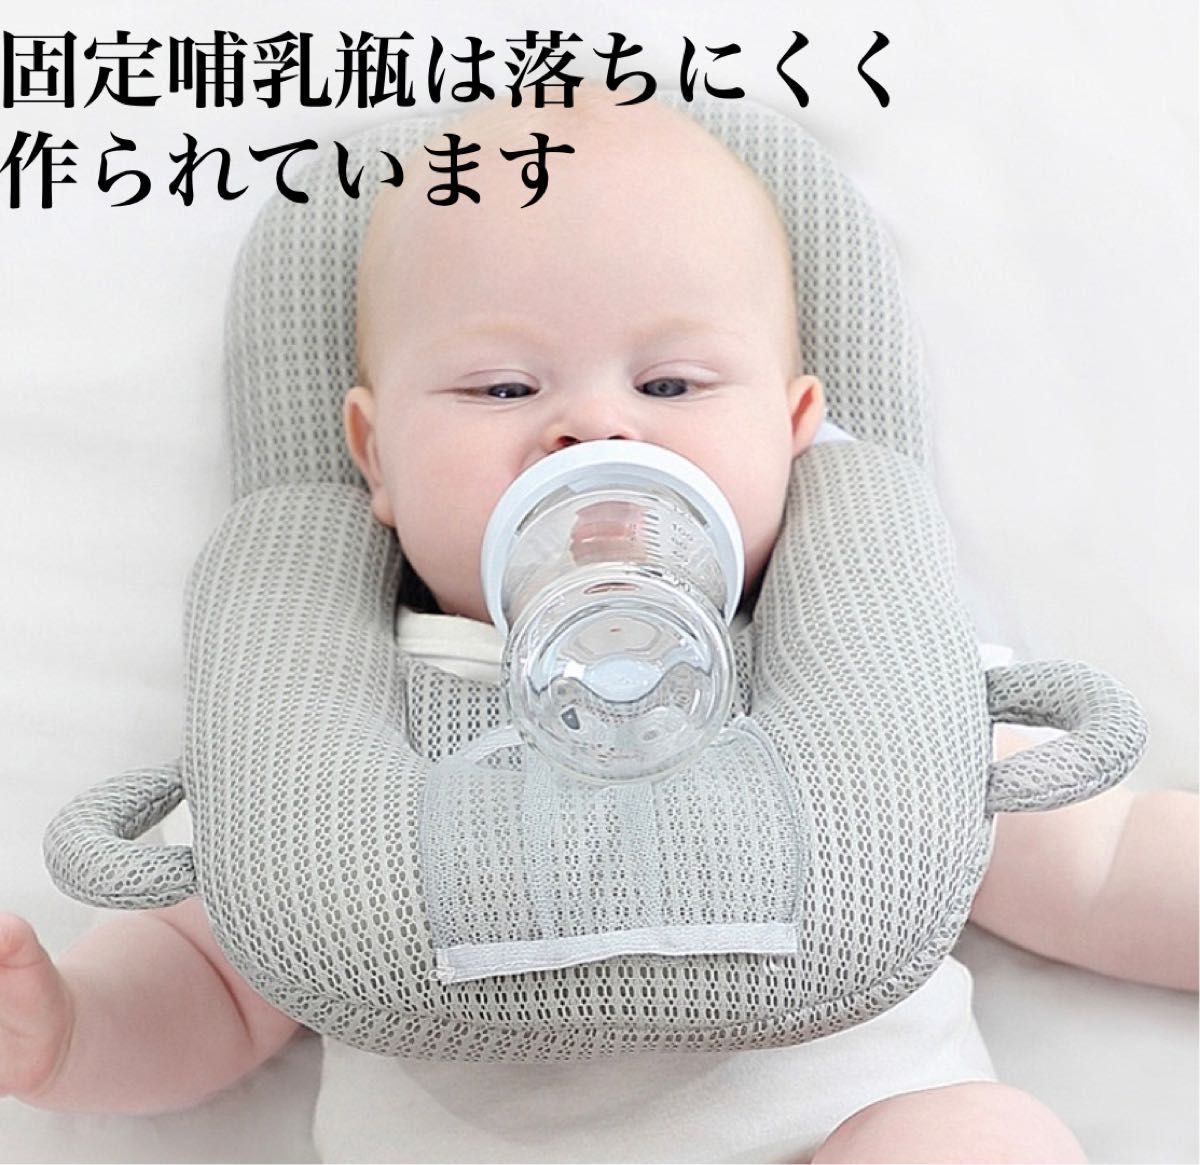 授乳クッション 哺乳瓶ホルダー 枕 赤ちゃん ベビー ハンズフリー 新生児 食事